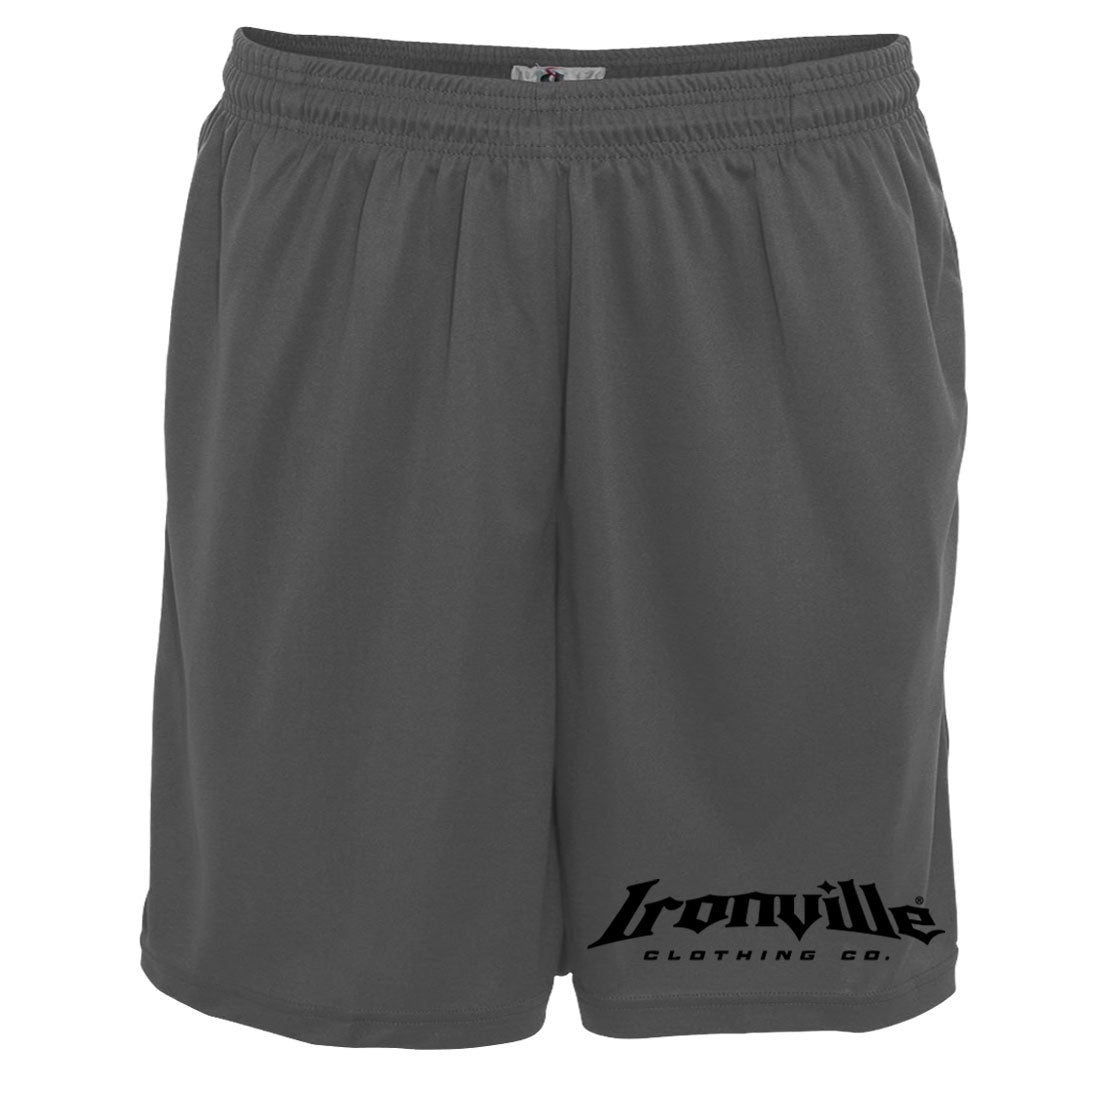 Ironville Pocket Gym Shorts - Horizontal Logo